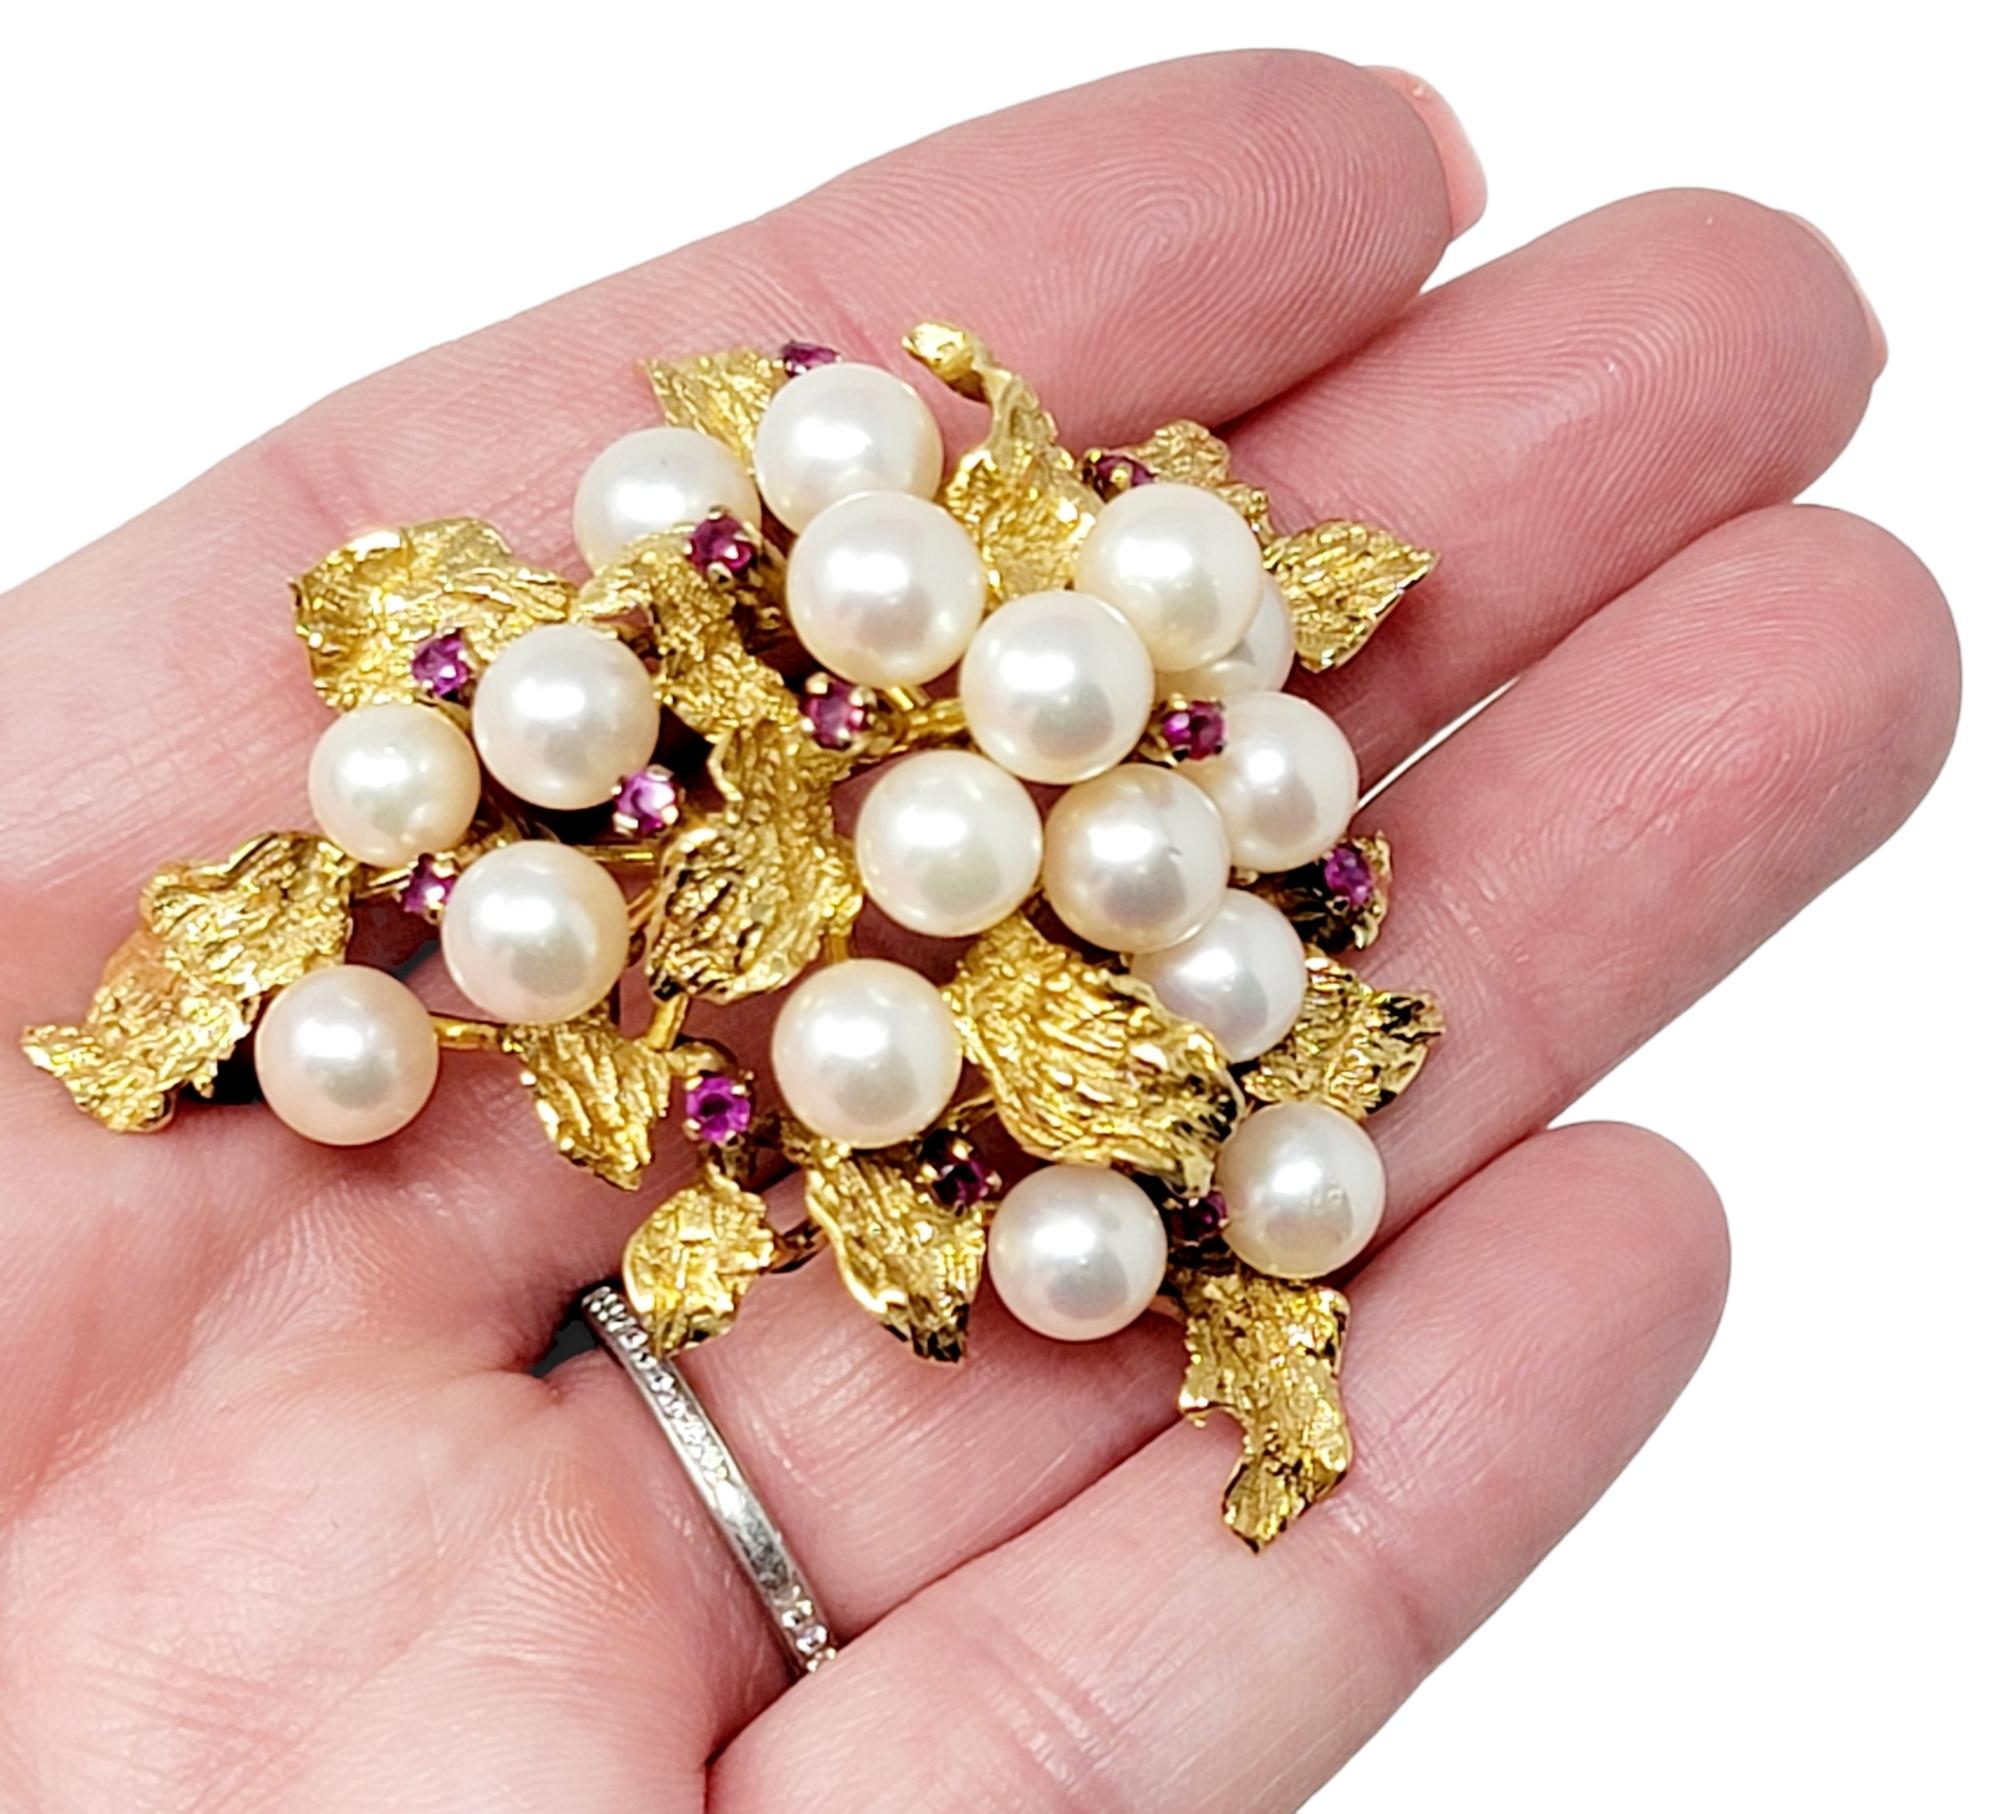 Die exquisite Vintage-Brosche mit Perlen und Rubinen wertet jedes Stück auf, mit dem sie kombiniert wird. Das ultrafeminine Design strahlt förmlich und bietet Funkeln, Glanz und Raffinesse. Diese wunderschöne Brosche ist aus 14 Karat Gelbgold